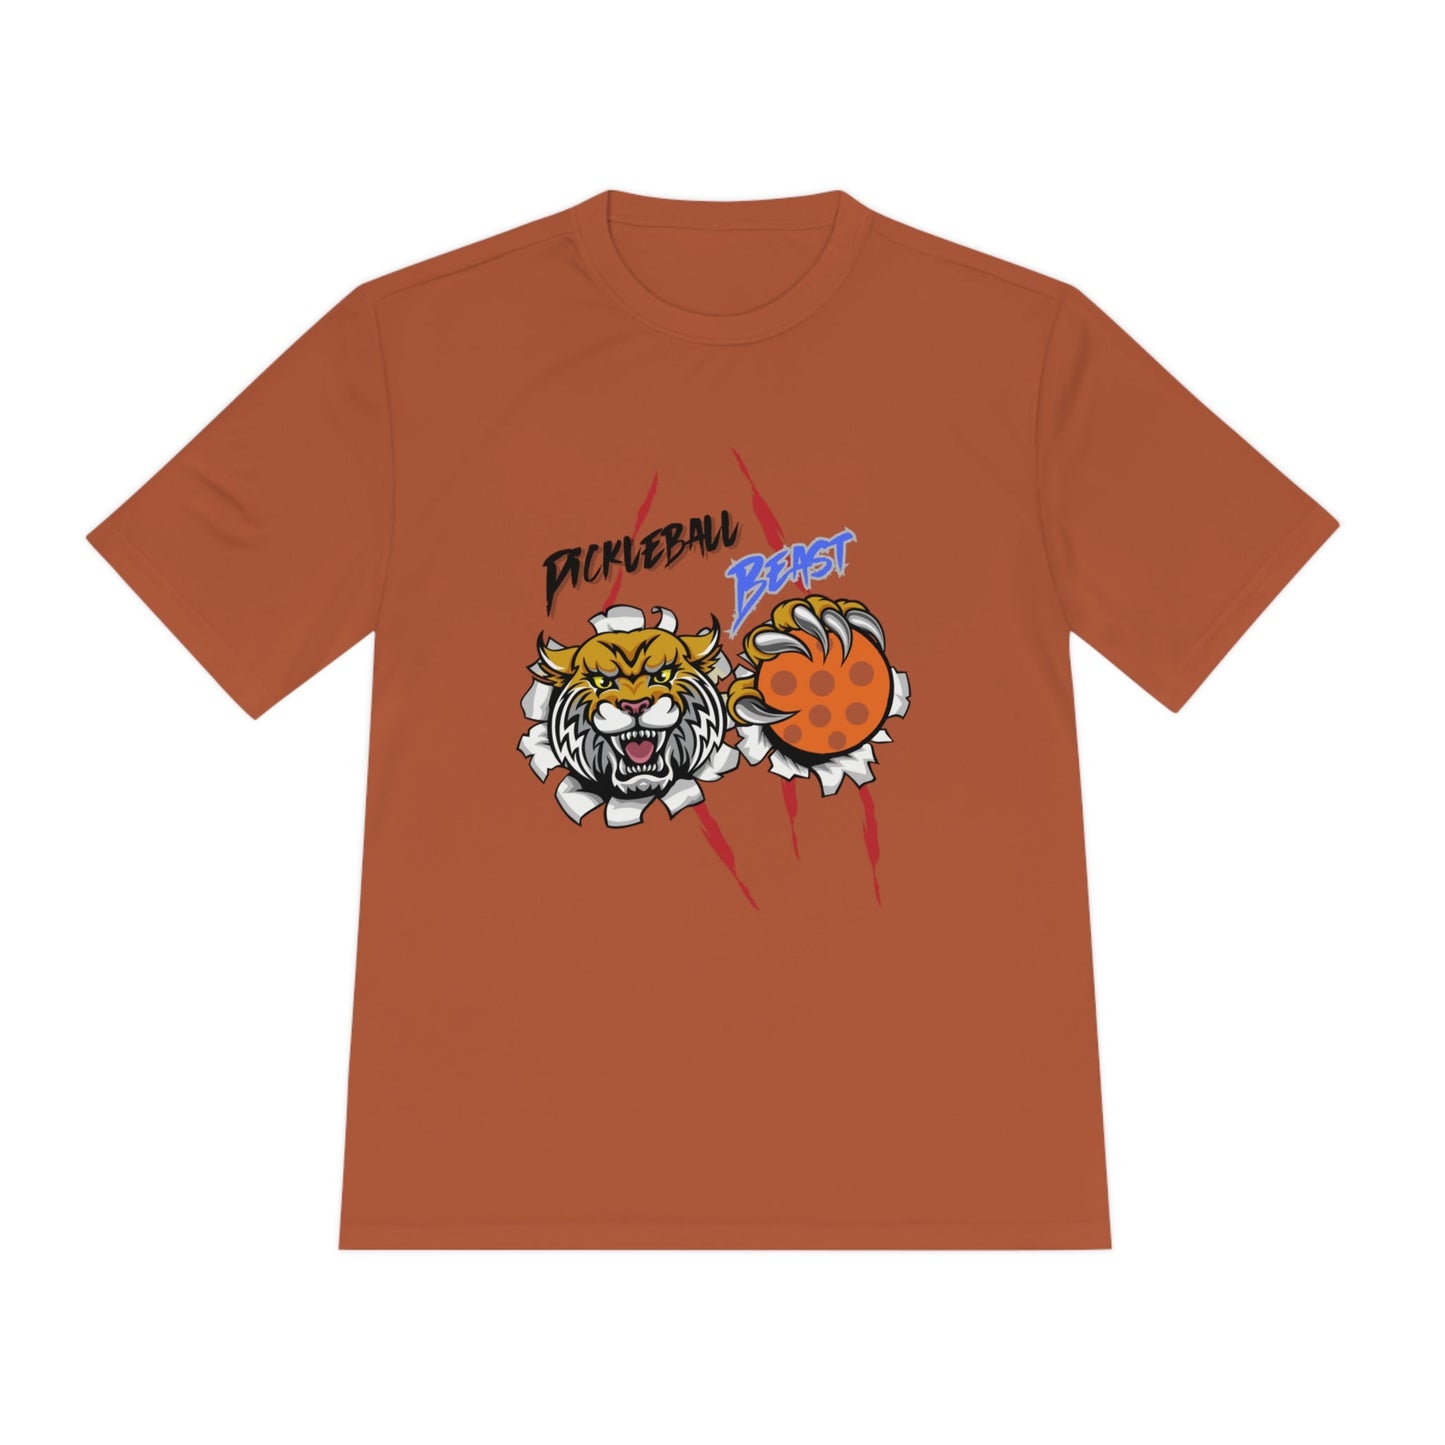 'Pickleball Beast' Dri Fit T-Shirt